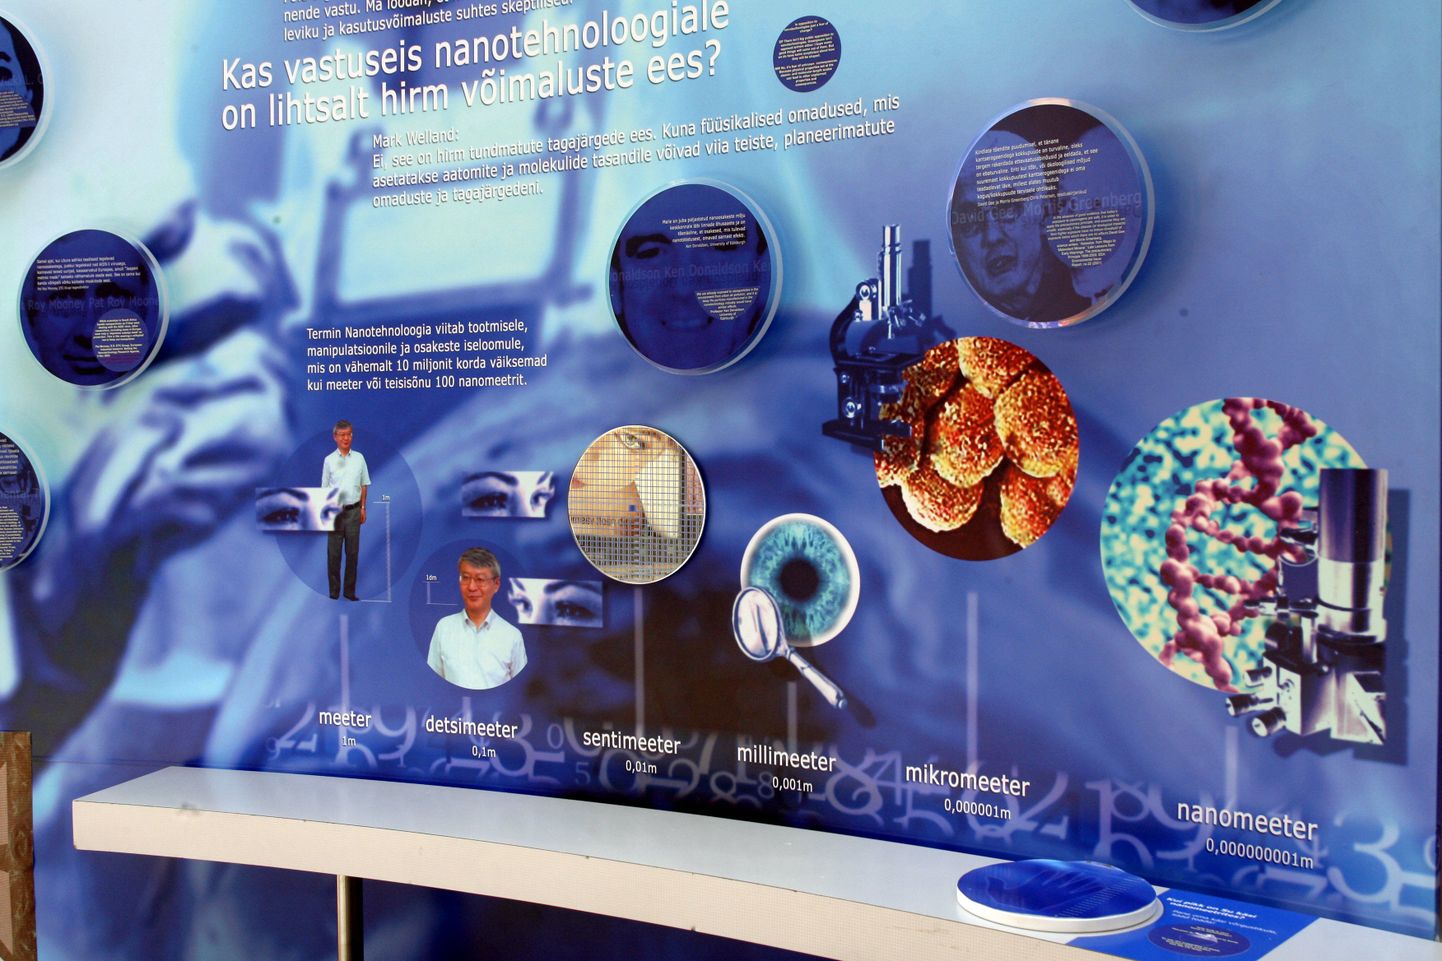 Nanotoodete tarbimisel tasub Eestis valminud värske doktoritöö tulemuste valguses olla ettevaatlik. Samas on juba aastaid tagasi korraldatud näitusi nanotehnoloogia populariseerimiseks. Pildil väljapanek 2006. aasta haridusnäituselt Nanodialoog.